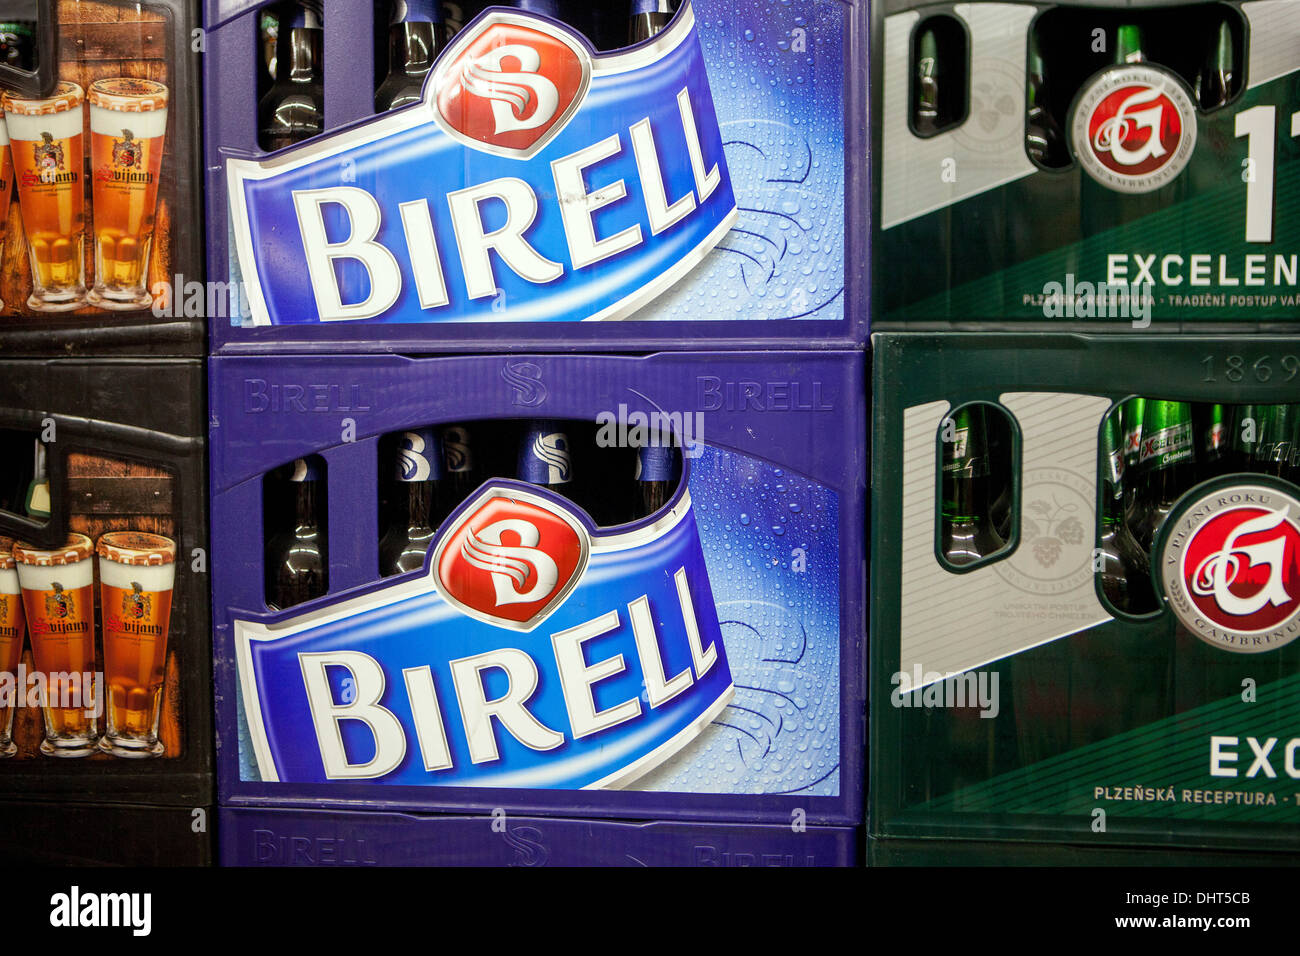 alkoholfreies Bier Birell Kiste Logo Zeichen Tschechische Stockfoto